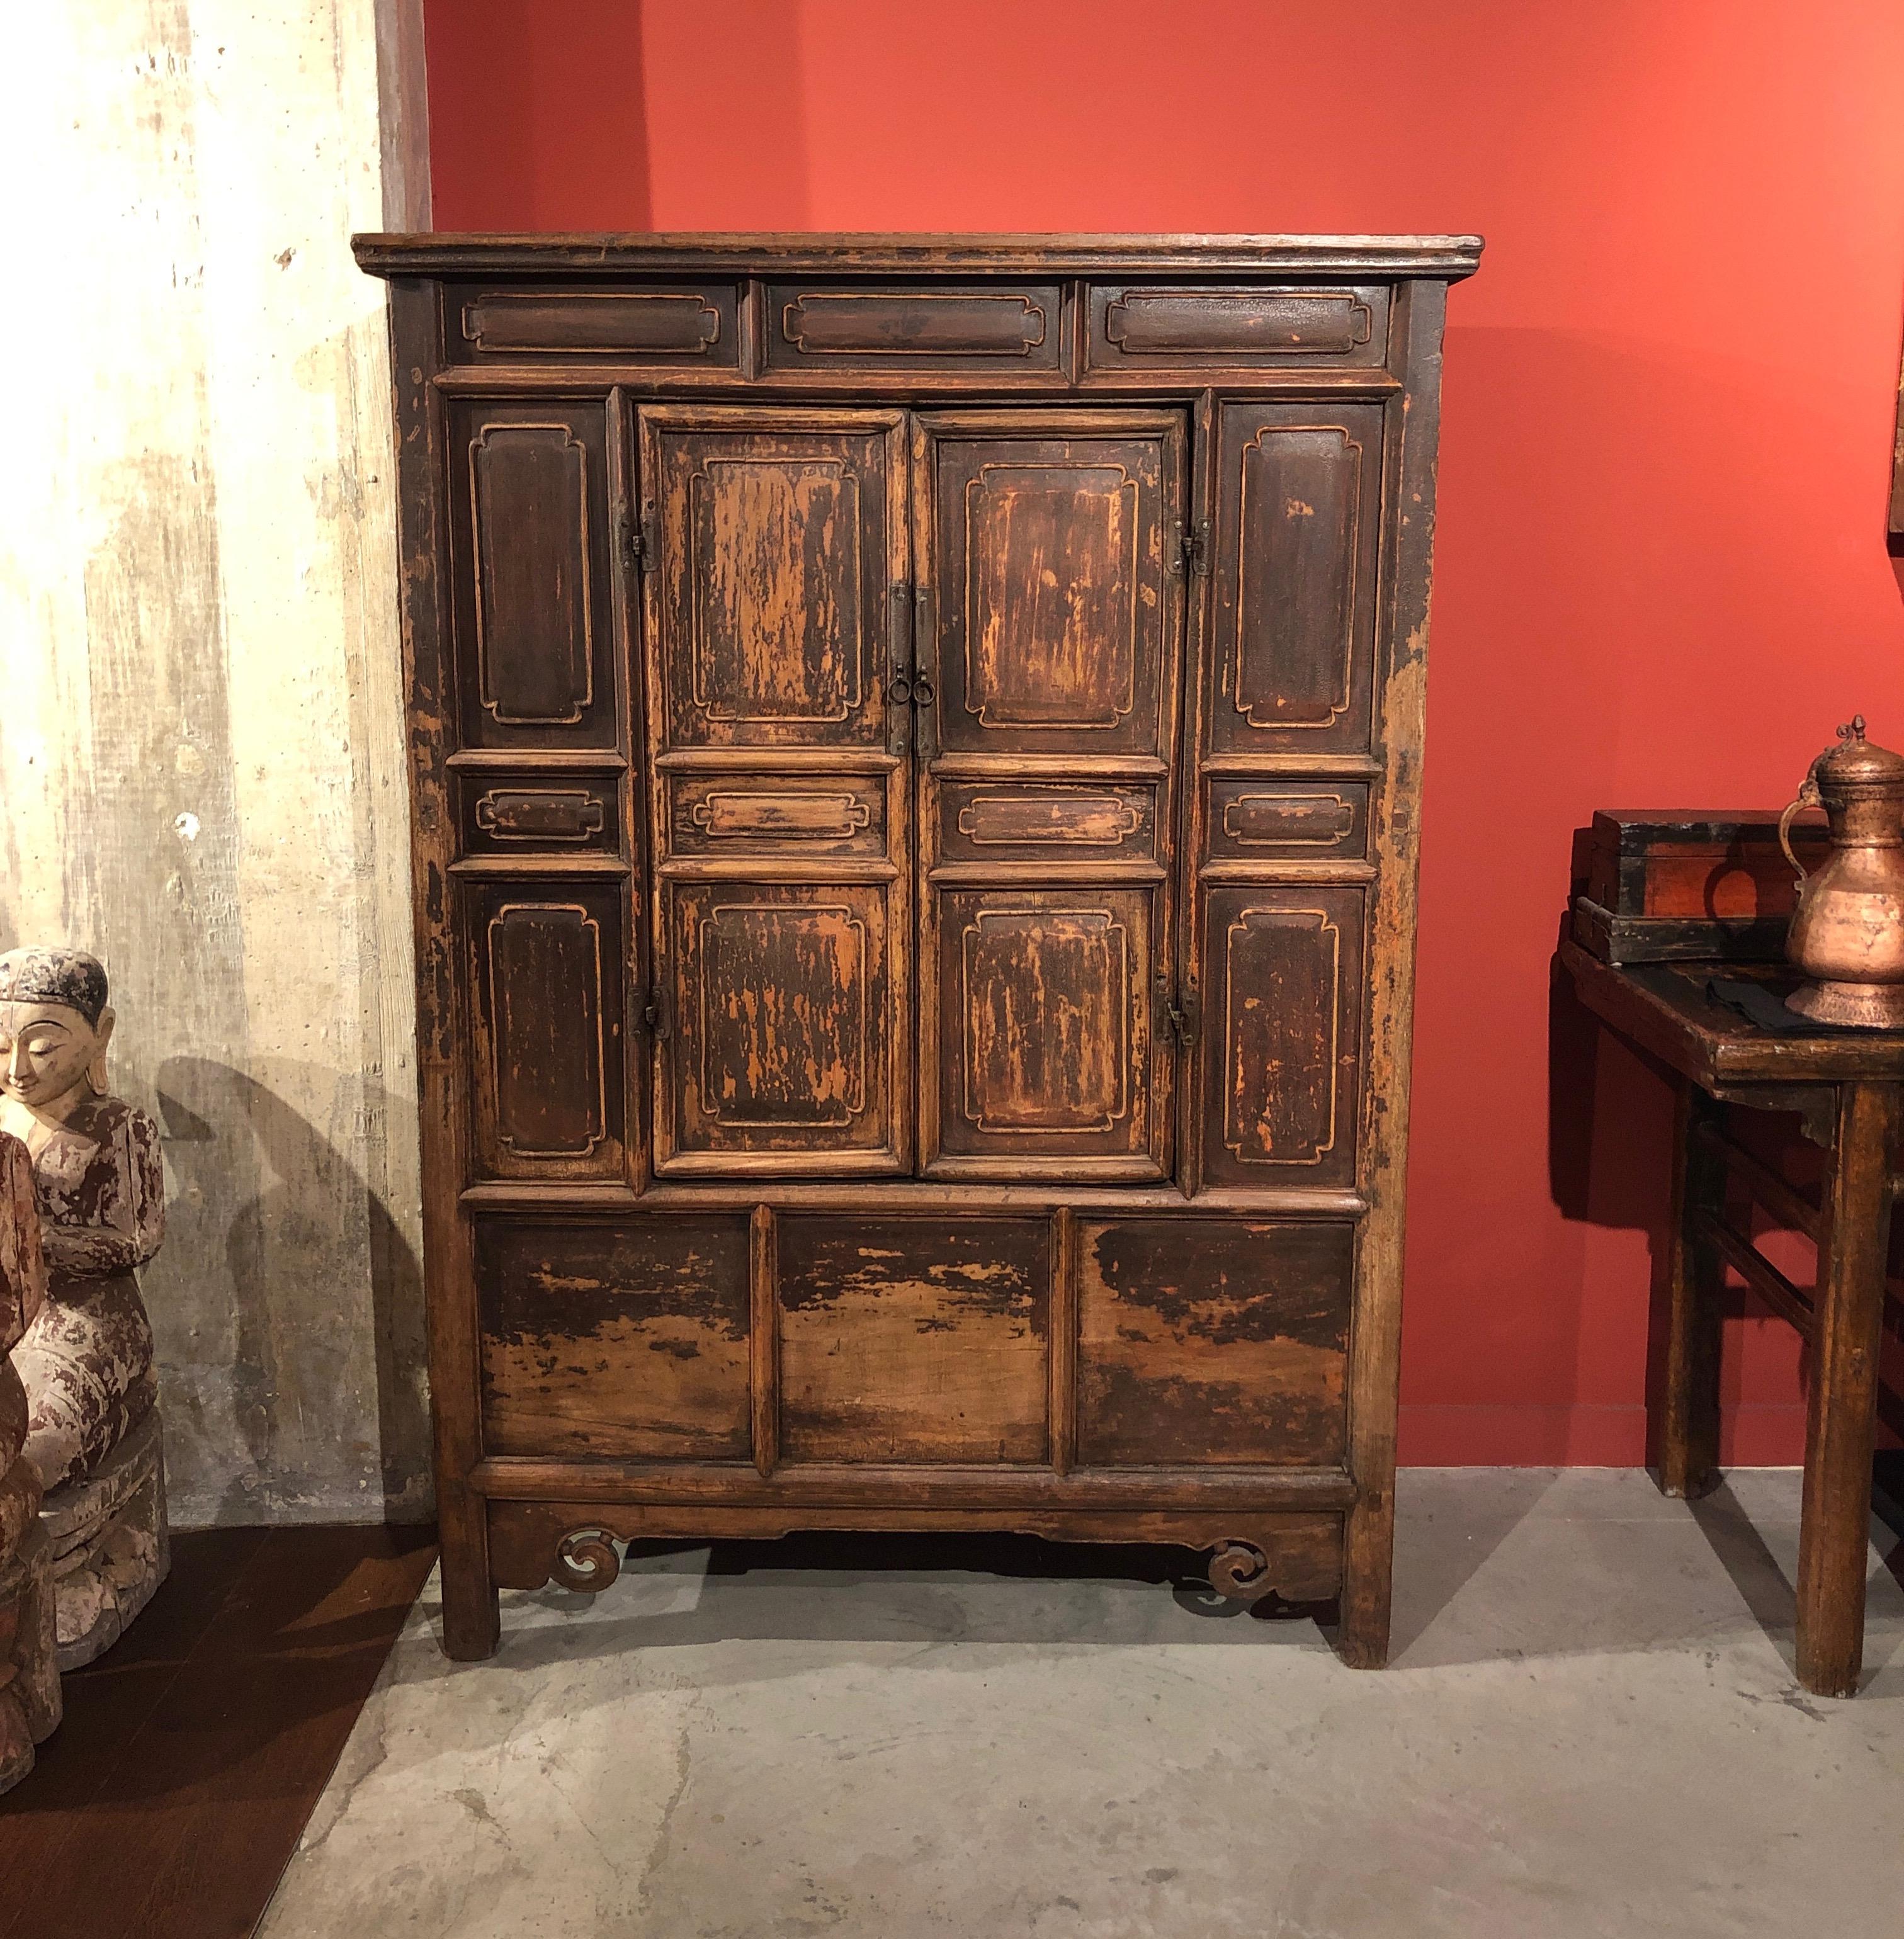 Un superbe cabinet de bouddha ancien en pin de Chine, avec une patine remarquable et chaleureuse. Une pièce impressionnante, qui reflète son histoire sur chaque surface. Chine, vers 1850 ou avant.
 